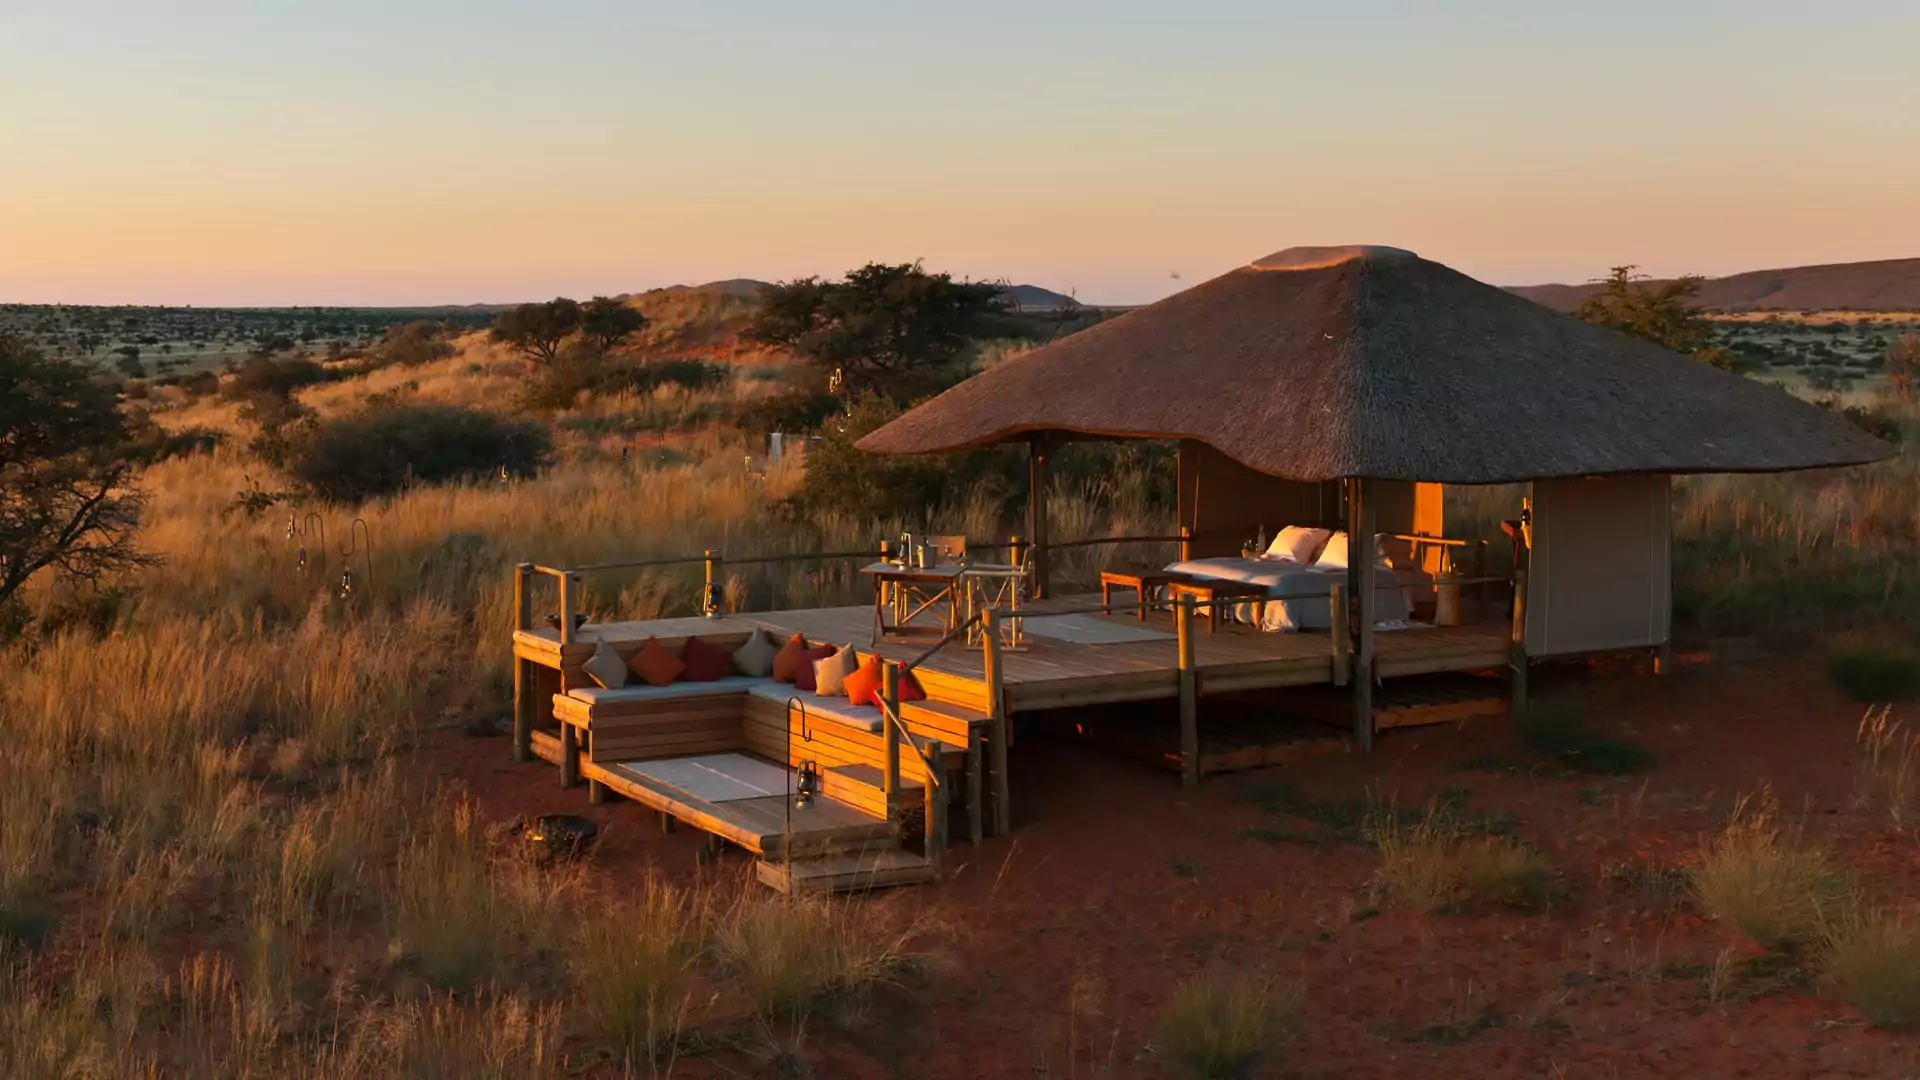 Tswalu Lodge The Malori Sleep Out deck, acomodação de luxo em meio ao deserto e savana